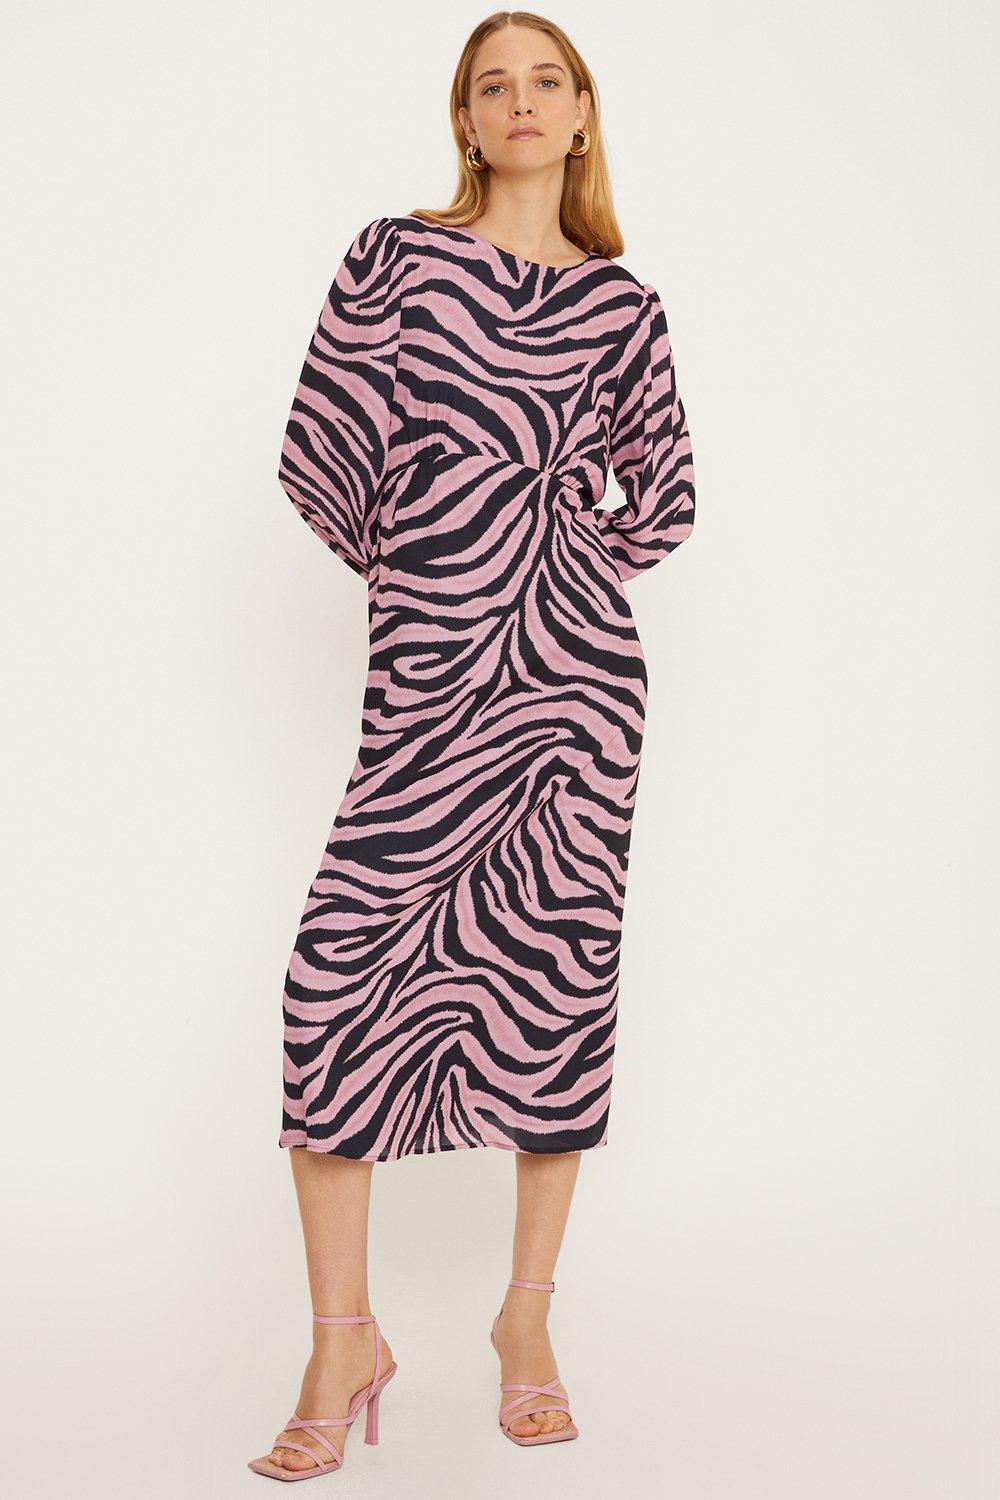 платье миди zen с зеброй tommy bahama цвет double chocolate Миниатюрное чайное платье миди розового цвета с зеброй Oasis, мультиколор